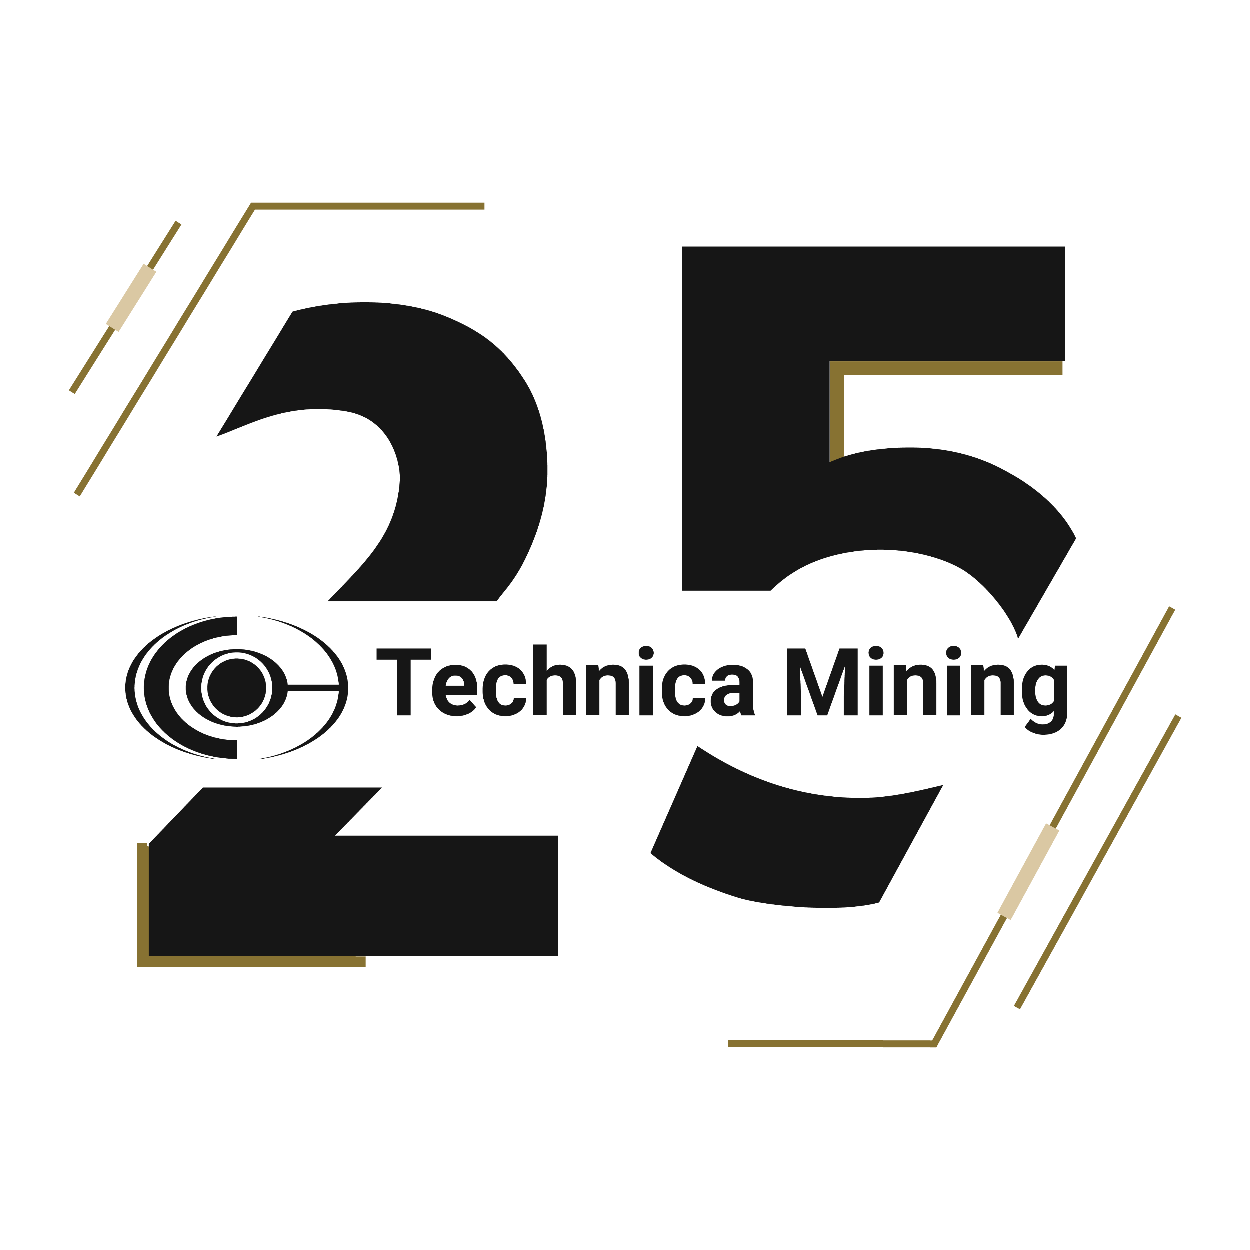 Technica Mining